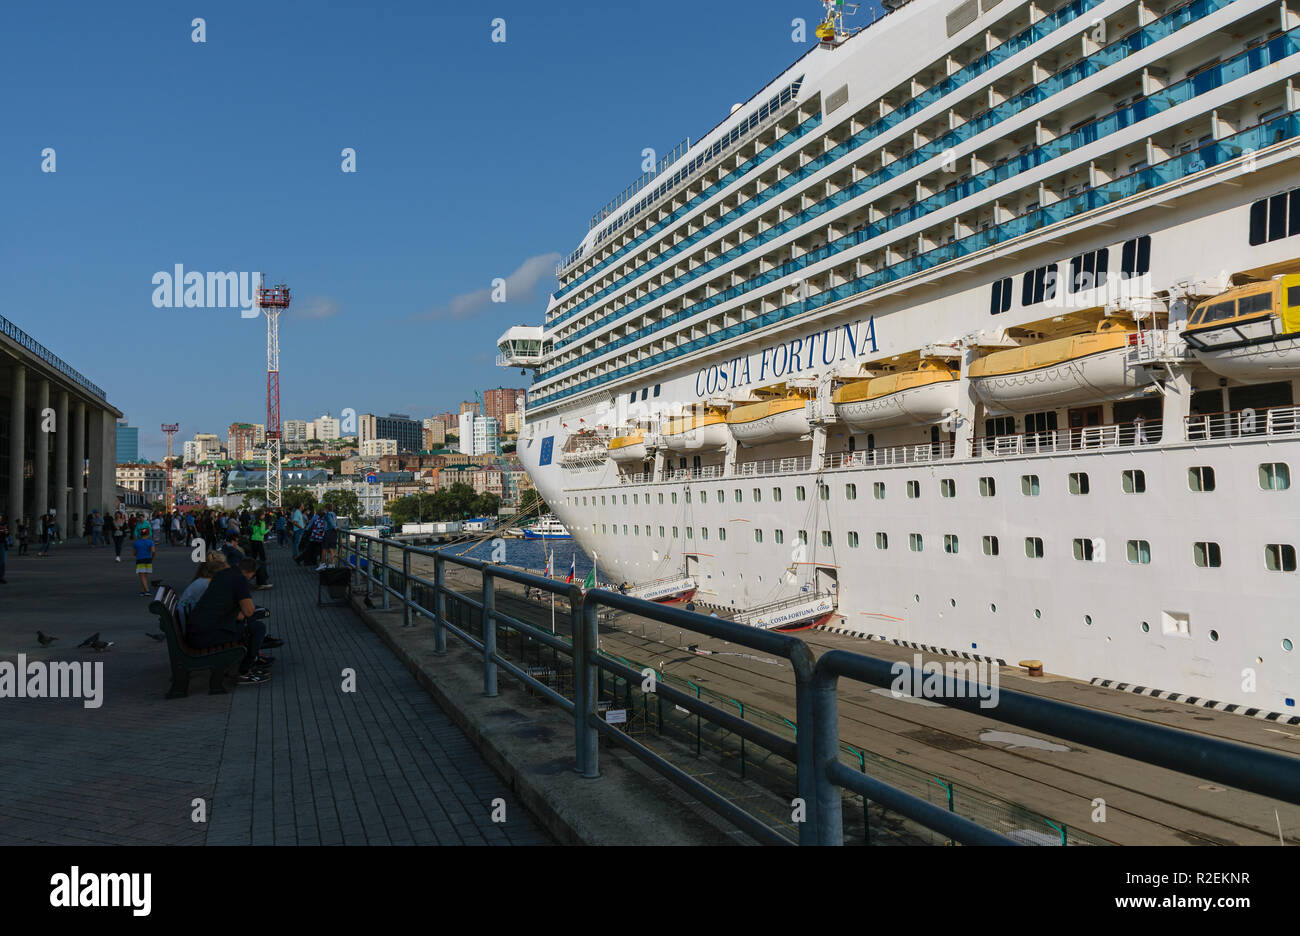 Wladiwostok, Russland - 22 September, 2018: Die Fortuna klasse Kreuzfahrtschiff "Costa Fortuna" Docks am Hafen von Wladiwostok. Stockfoto